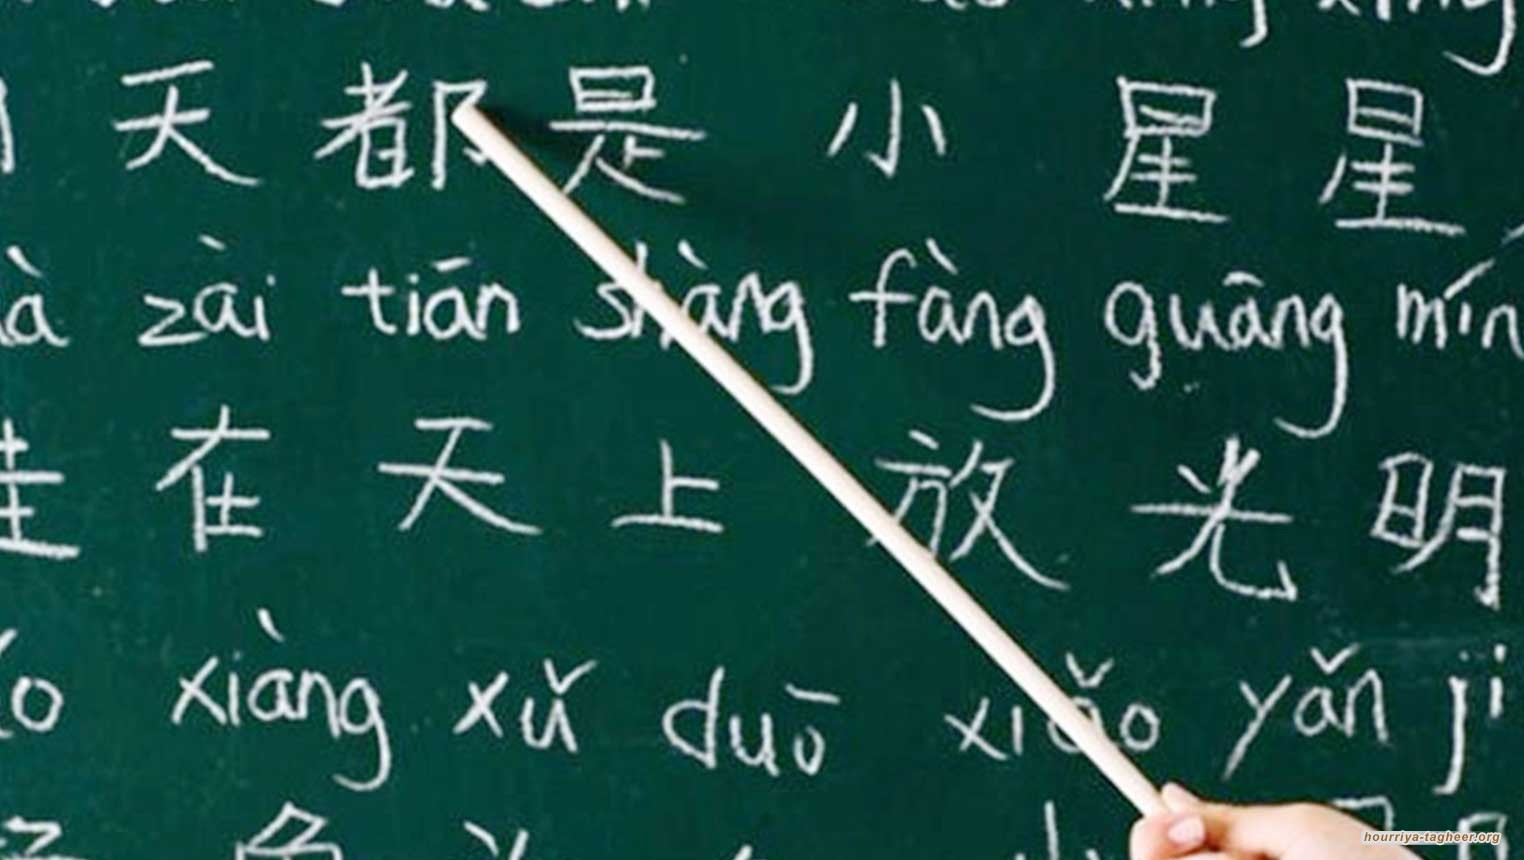 تدريس الصينية بالسعودية.. خطوة نوعية أم كمالية